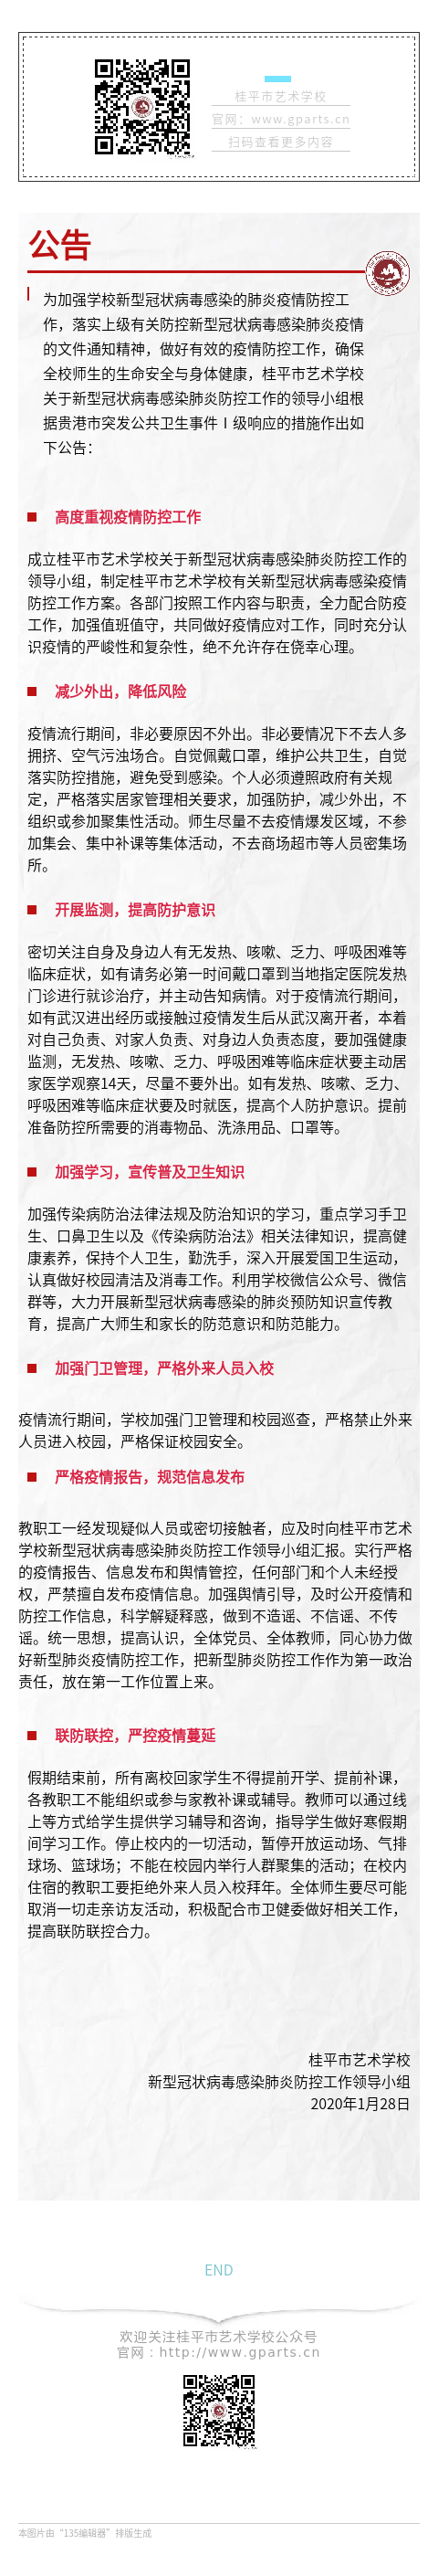 桂平市艺术学校关于2020年春季学期开学时间延迟通知